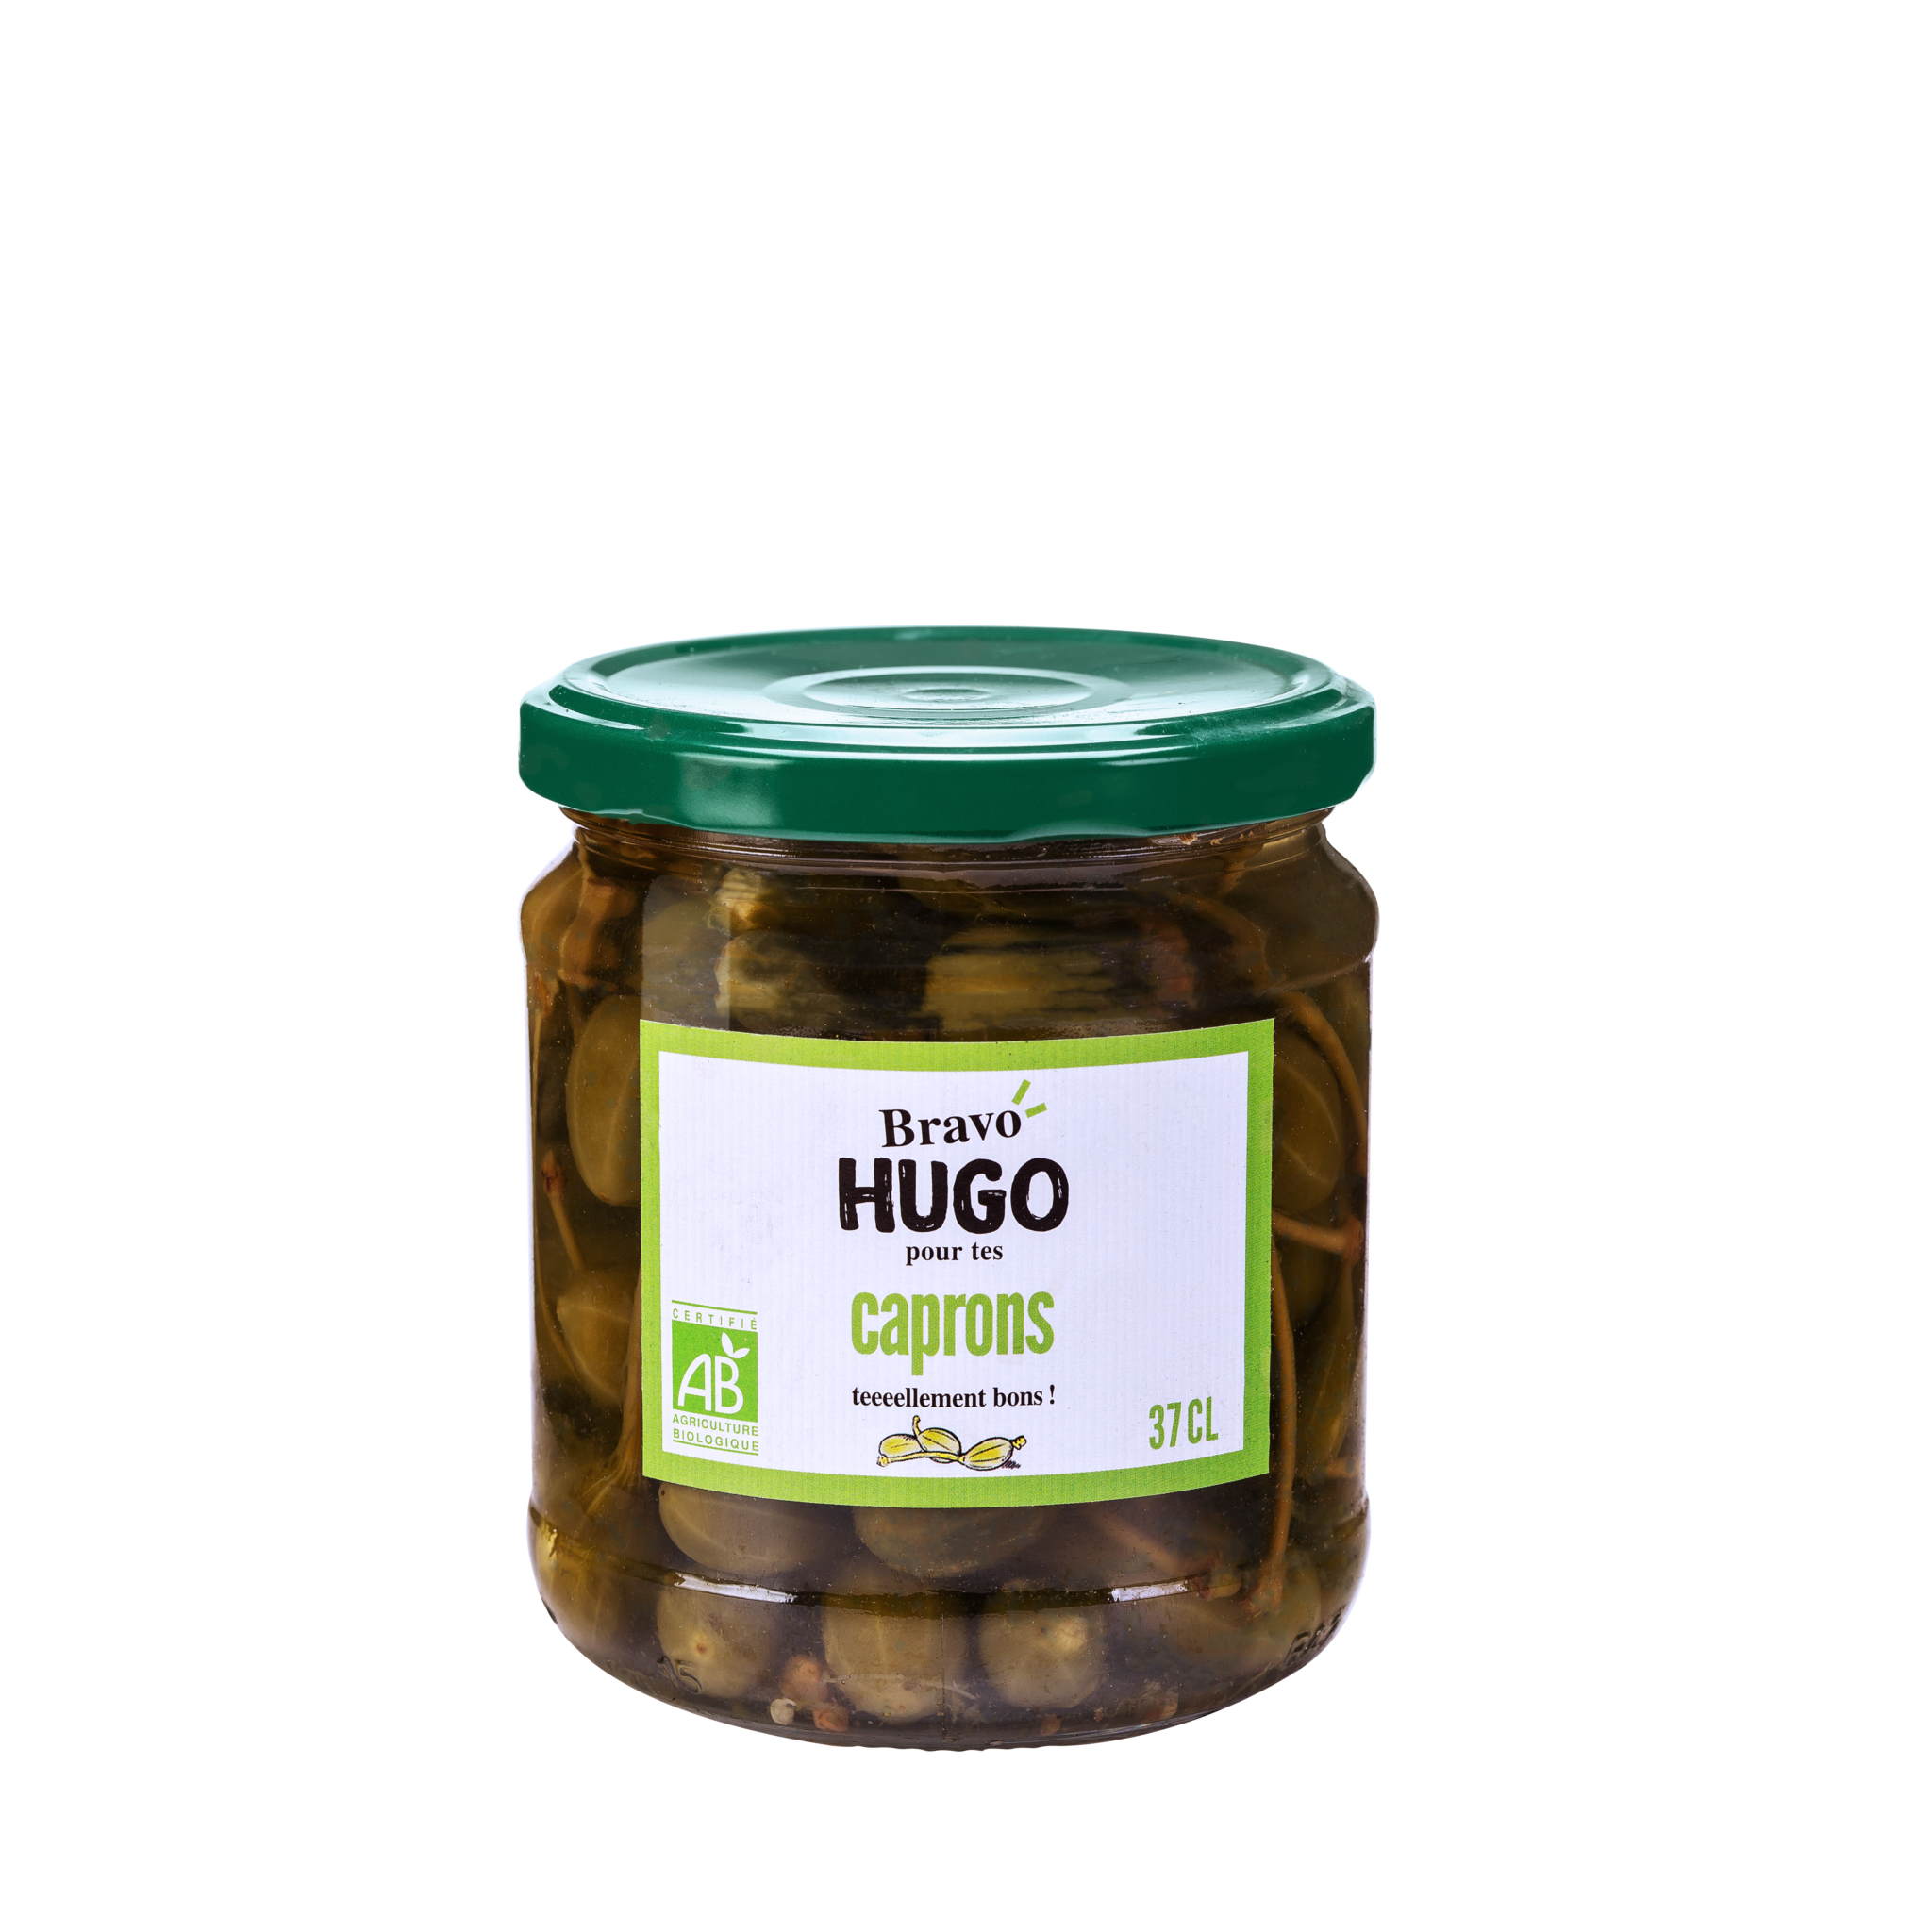 Bravo hugo Capron 37cl HD 2048x2048 1 - Des nouveaux pickles bio et gourmands chez Bravo Hugo